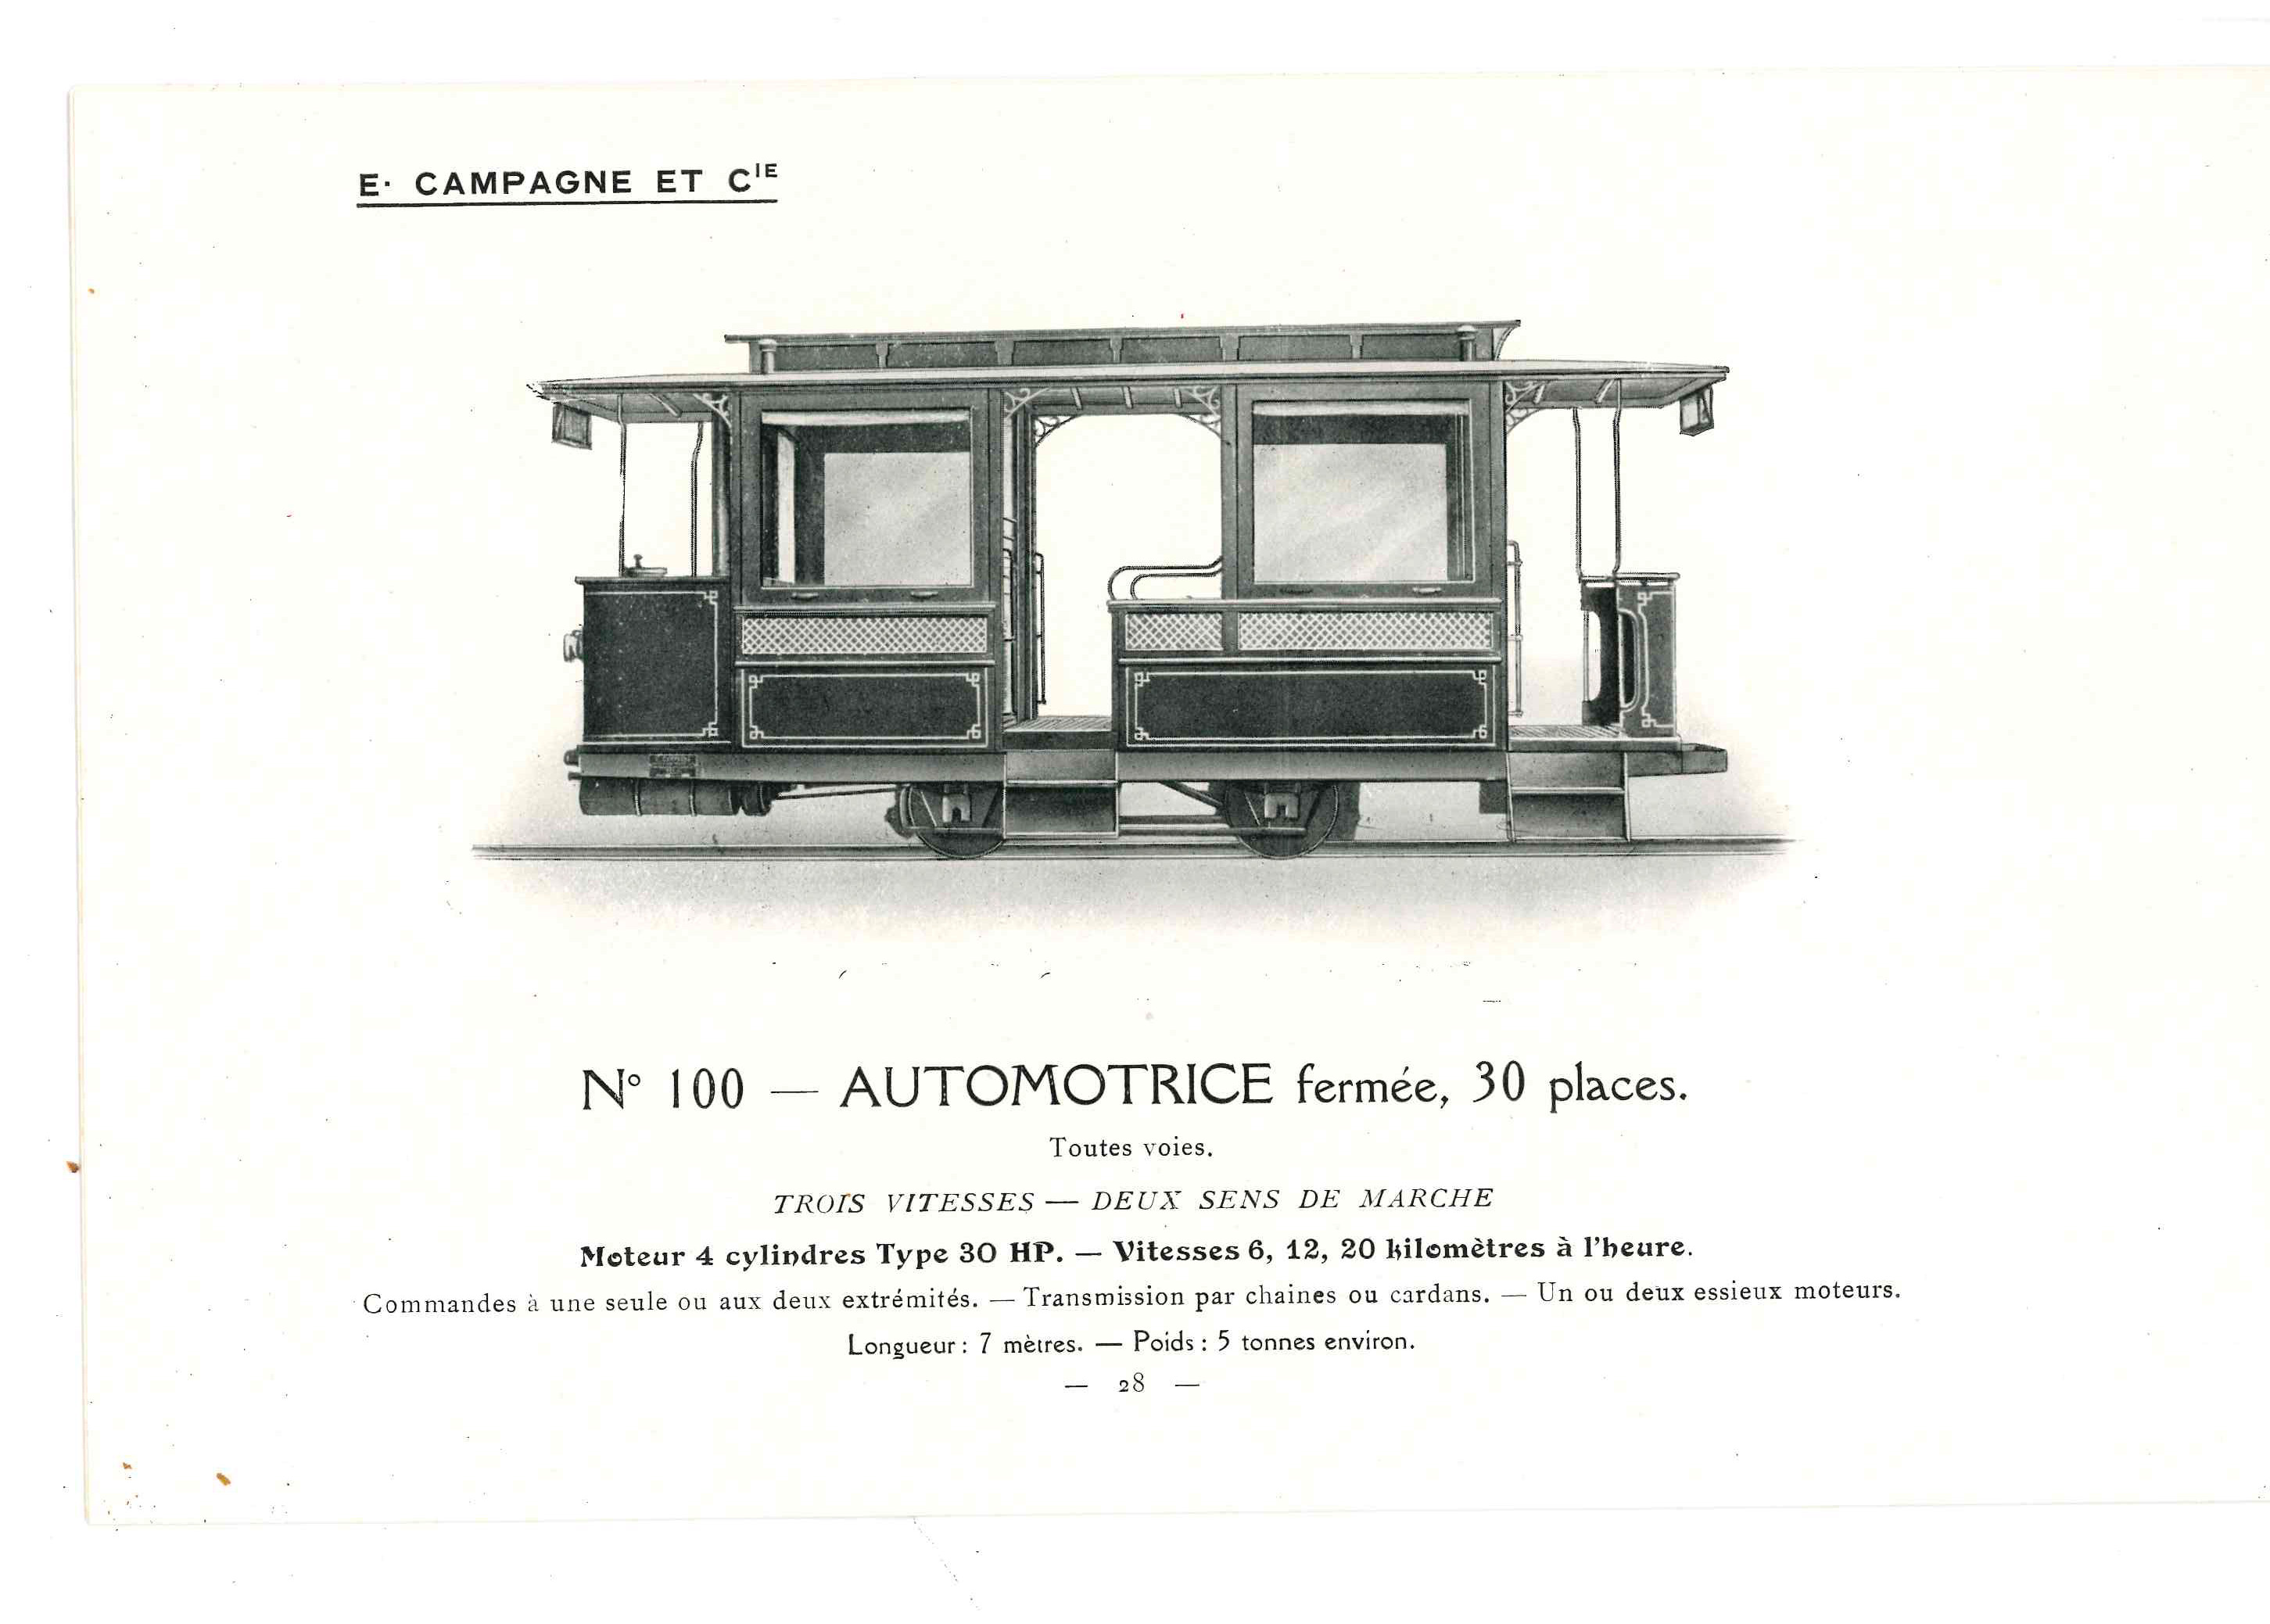 Brochure de la Société E Campagne et Cie : intérieur de draisine d'inspection, vers 1914 (GGI 41661)